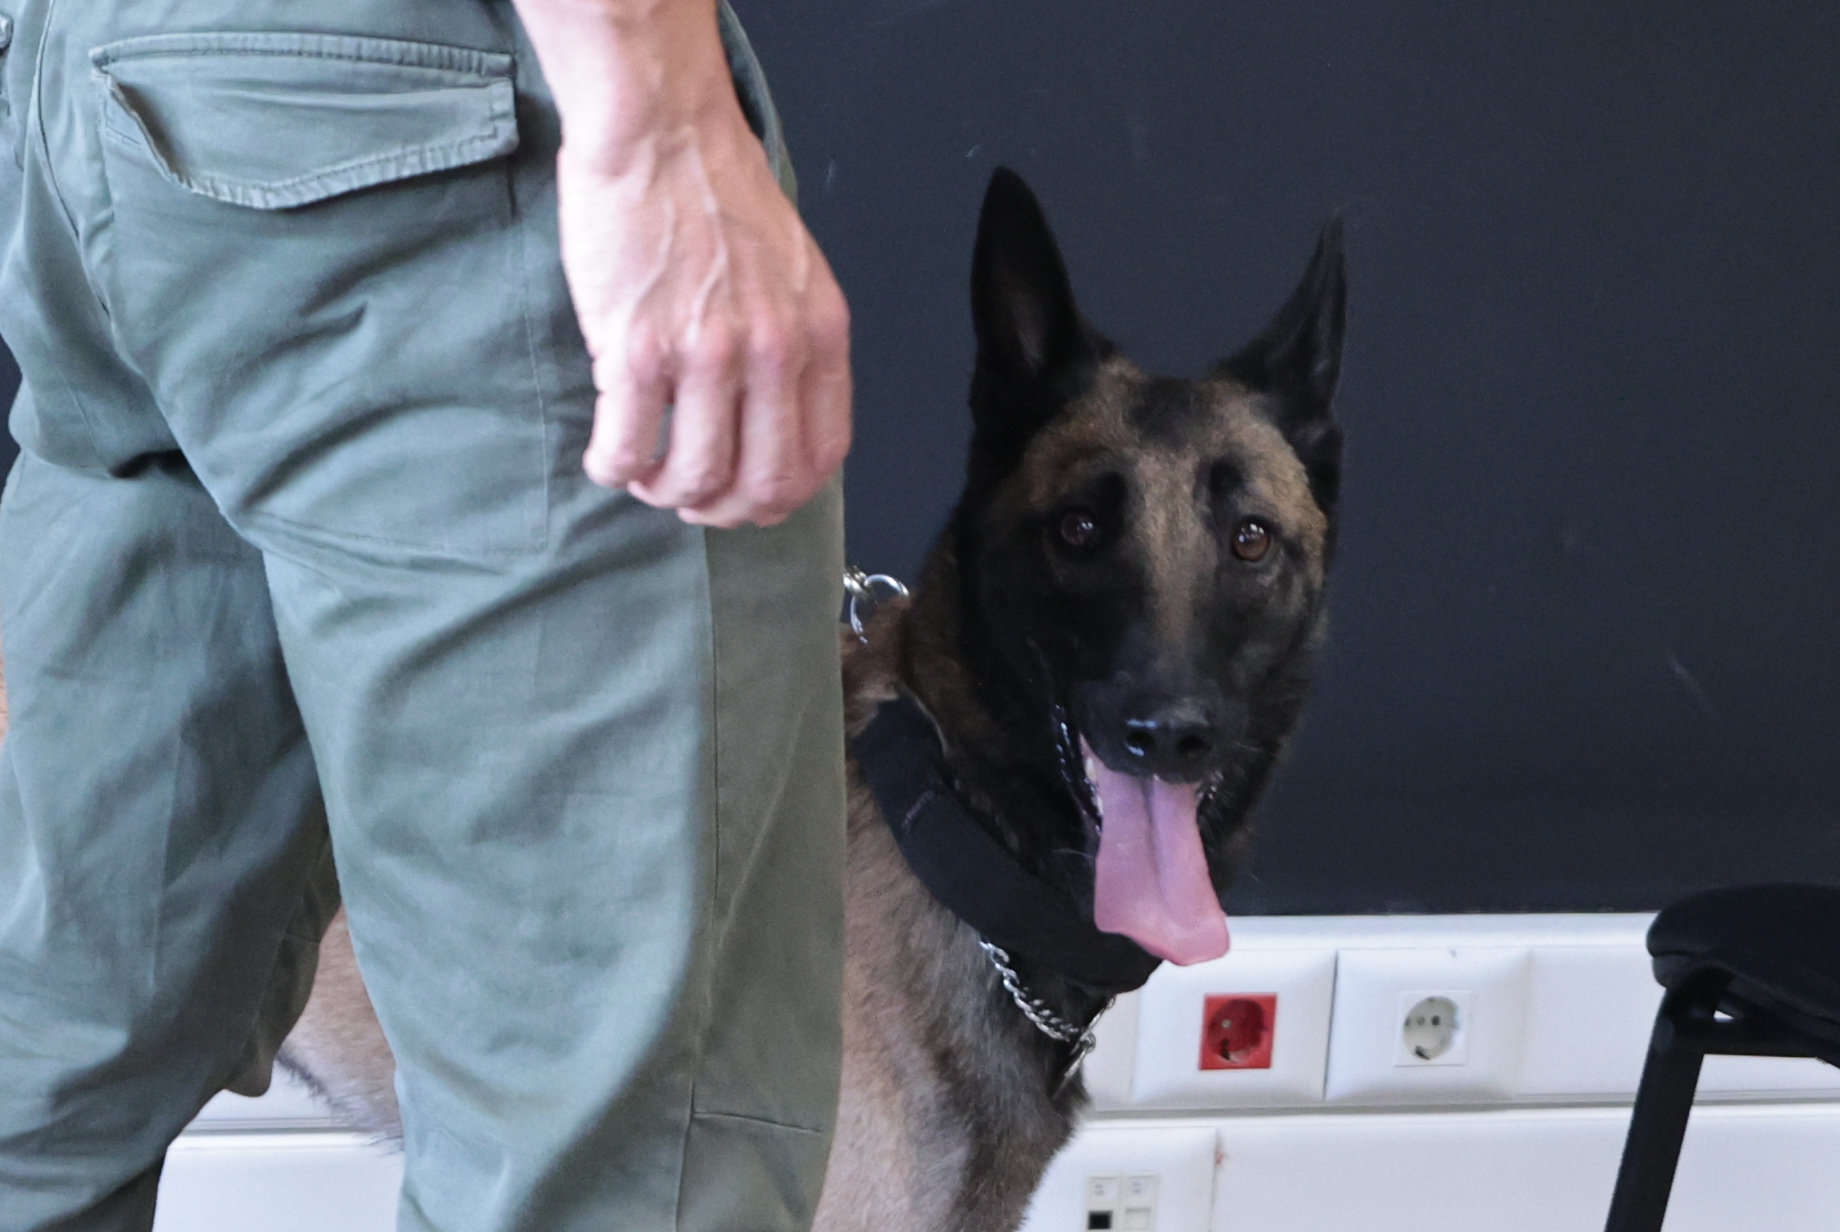 Ηγουμενίτσα: Ο αστυνομικός σκύλος «Βλαντ» εντόπισε 59 κιλά κοκαΐνη σε φορτηγό ψυγείο